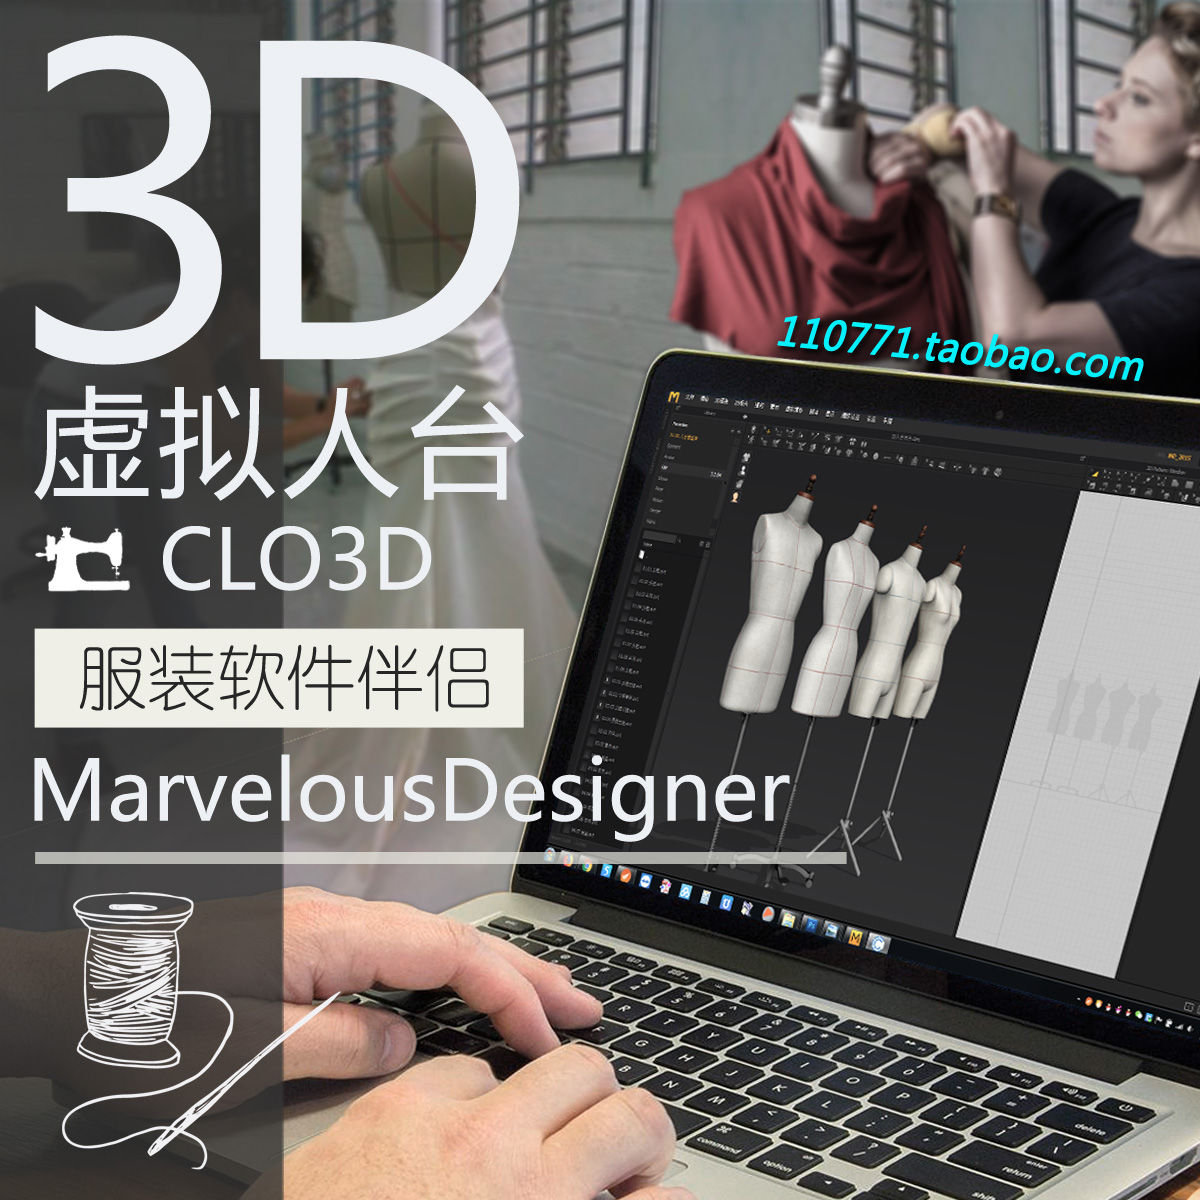 虚拟人台3D服装软件Marvelous Designer与CLO3D伴侣立裁设计模型